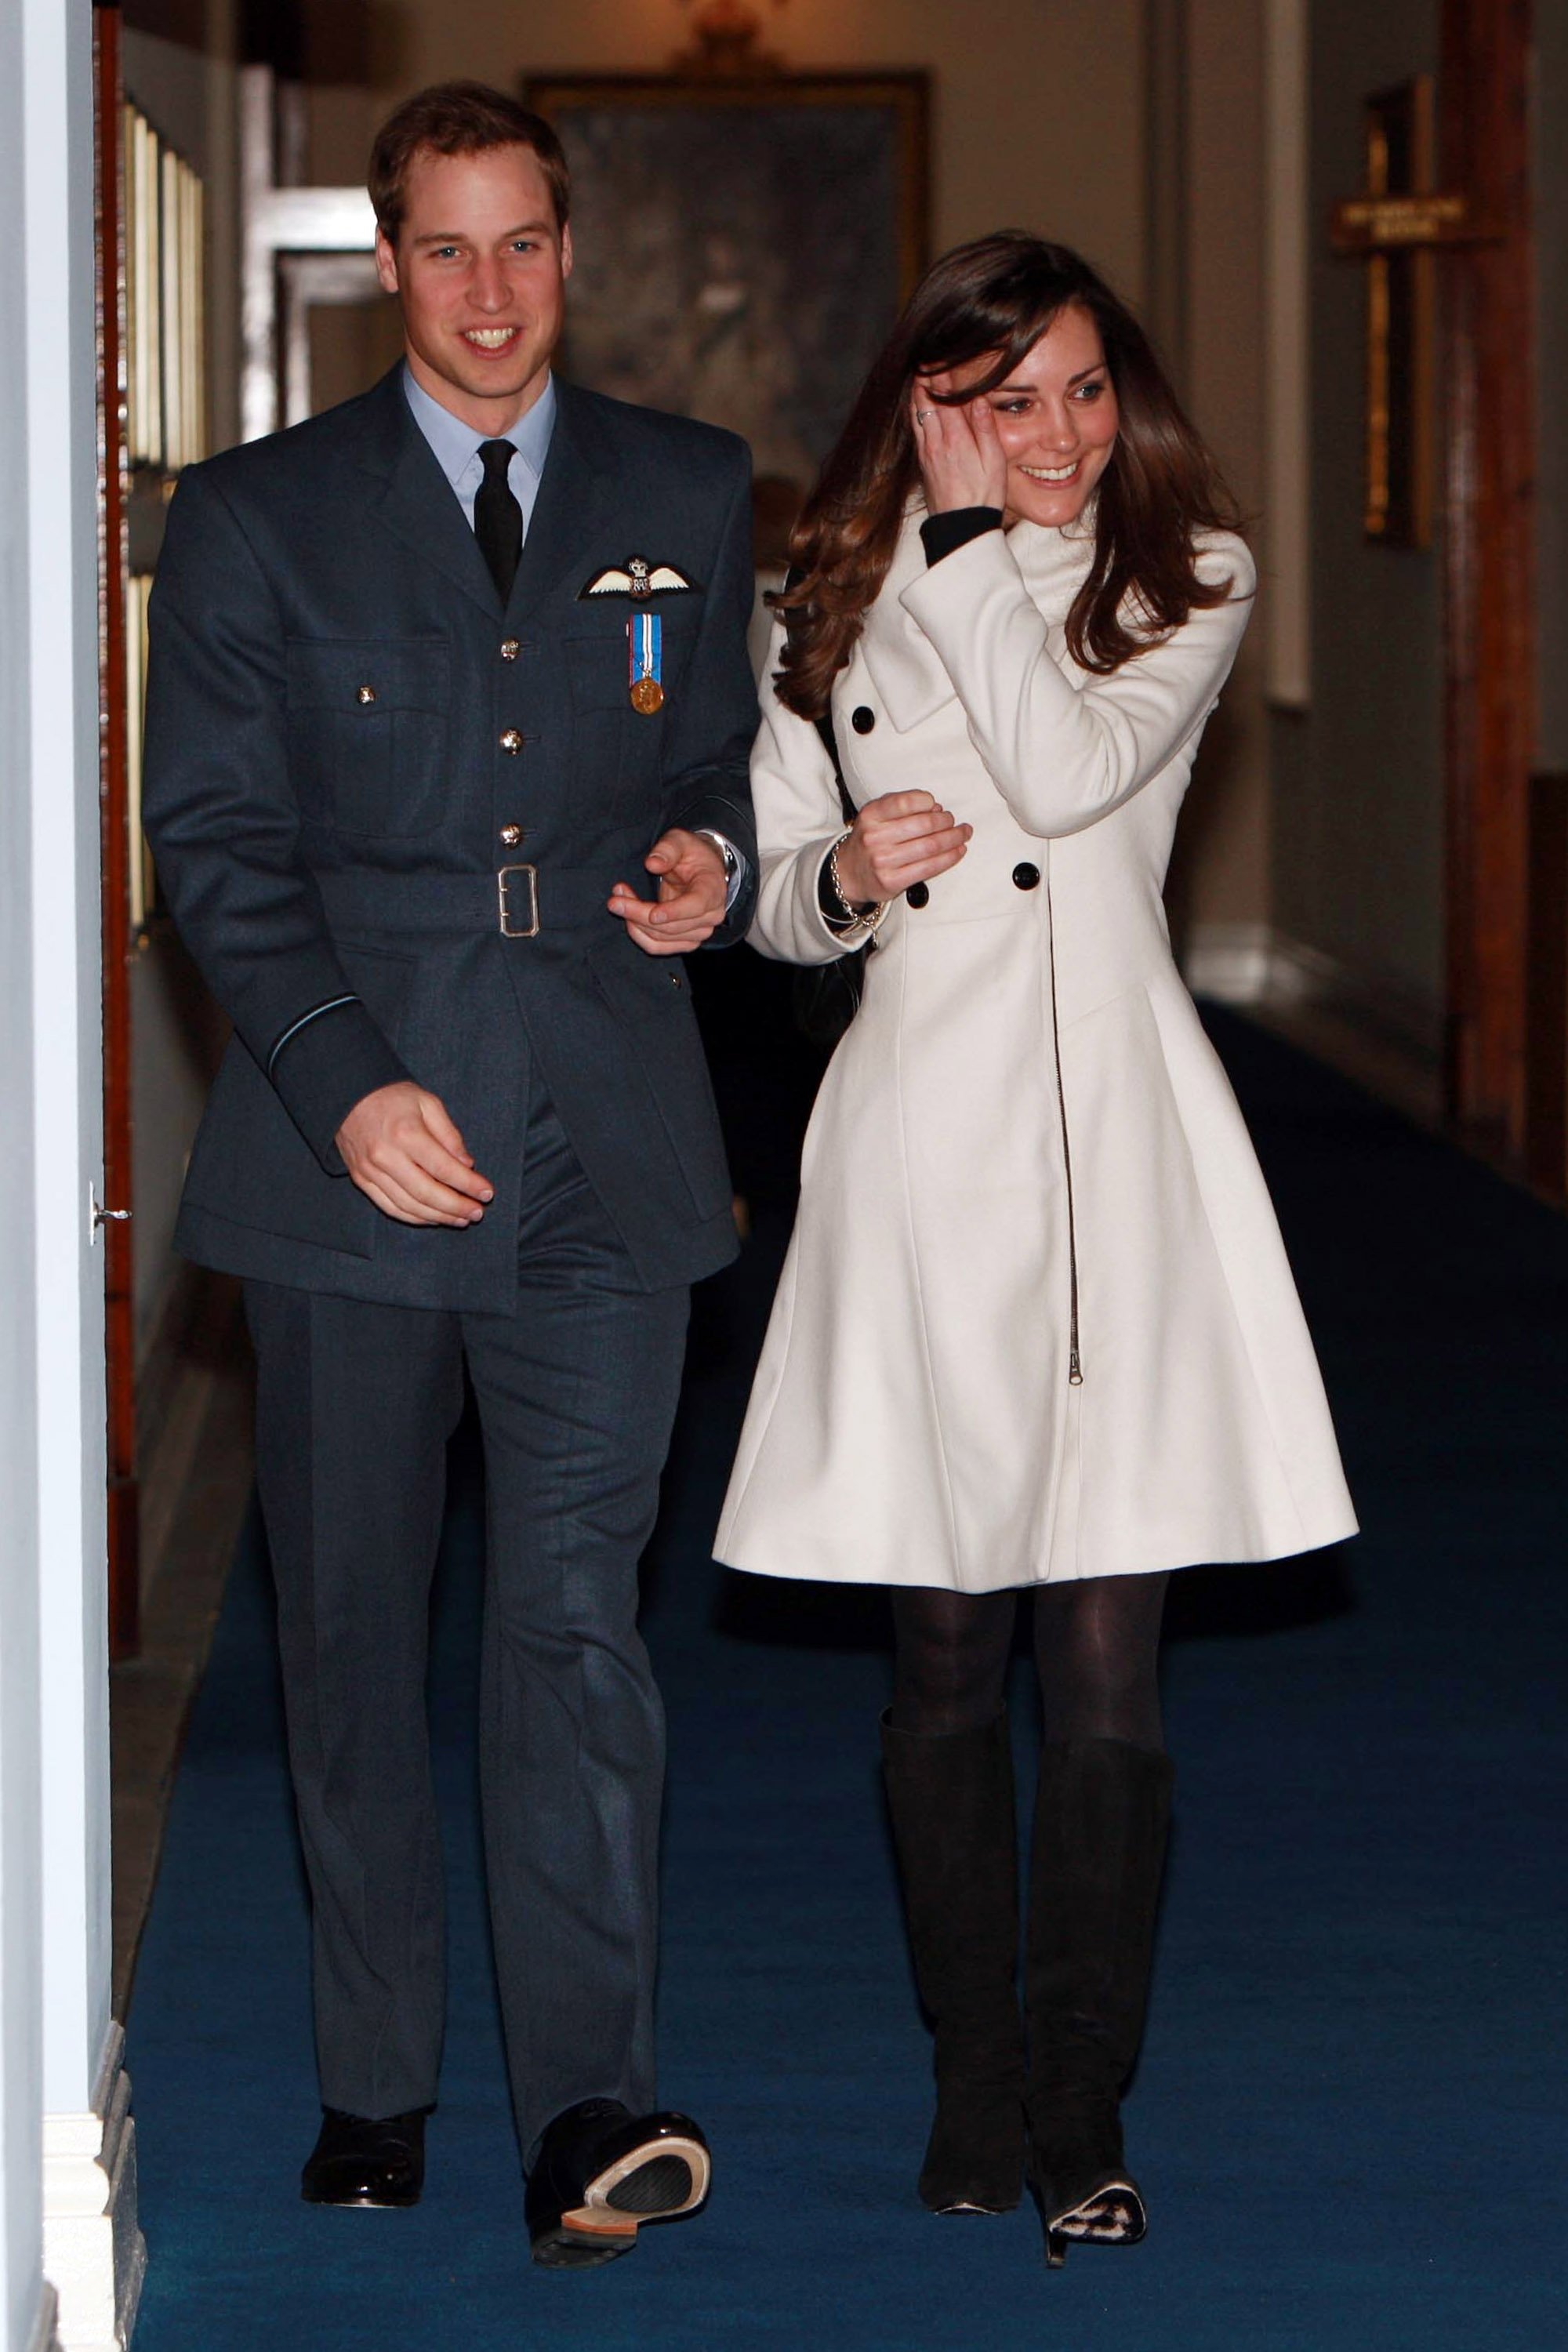 El príncipe William con su novia Kate Middleton tras su ceremonia de graduación en la RAF Cranwell el 11 de abril de 2008, en Cranwell, Inglaterra. | Foto: Getty Images